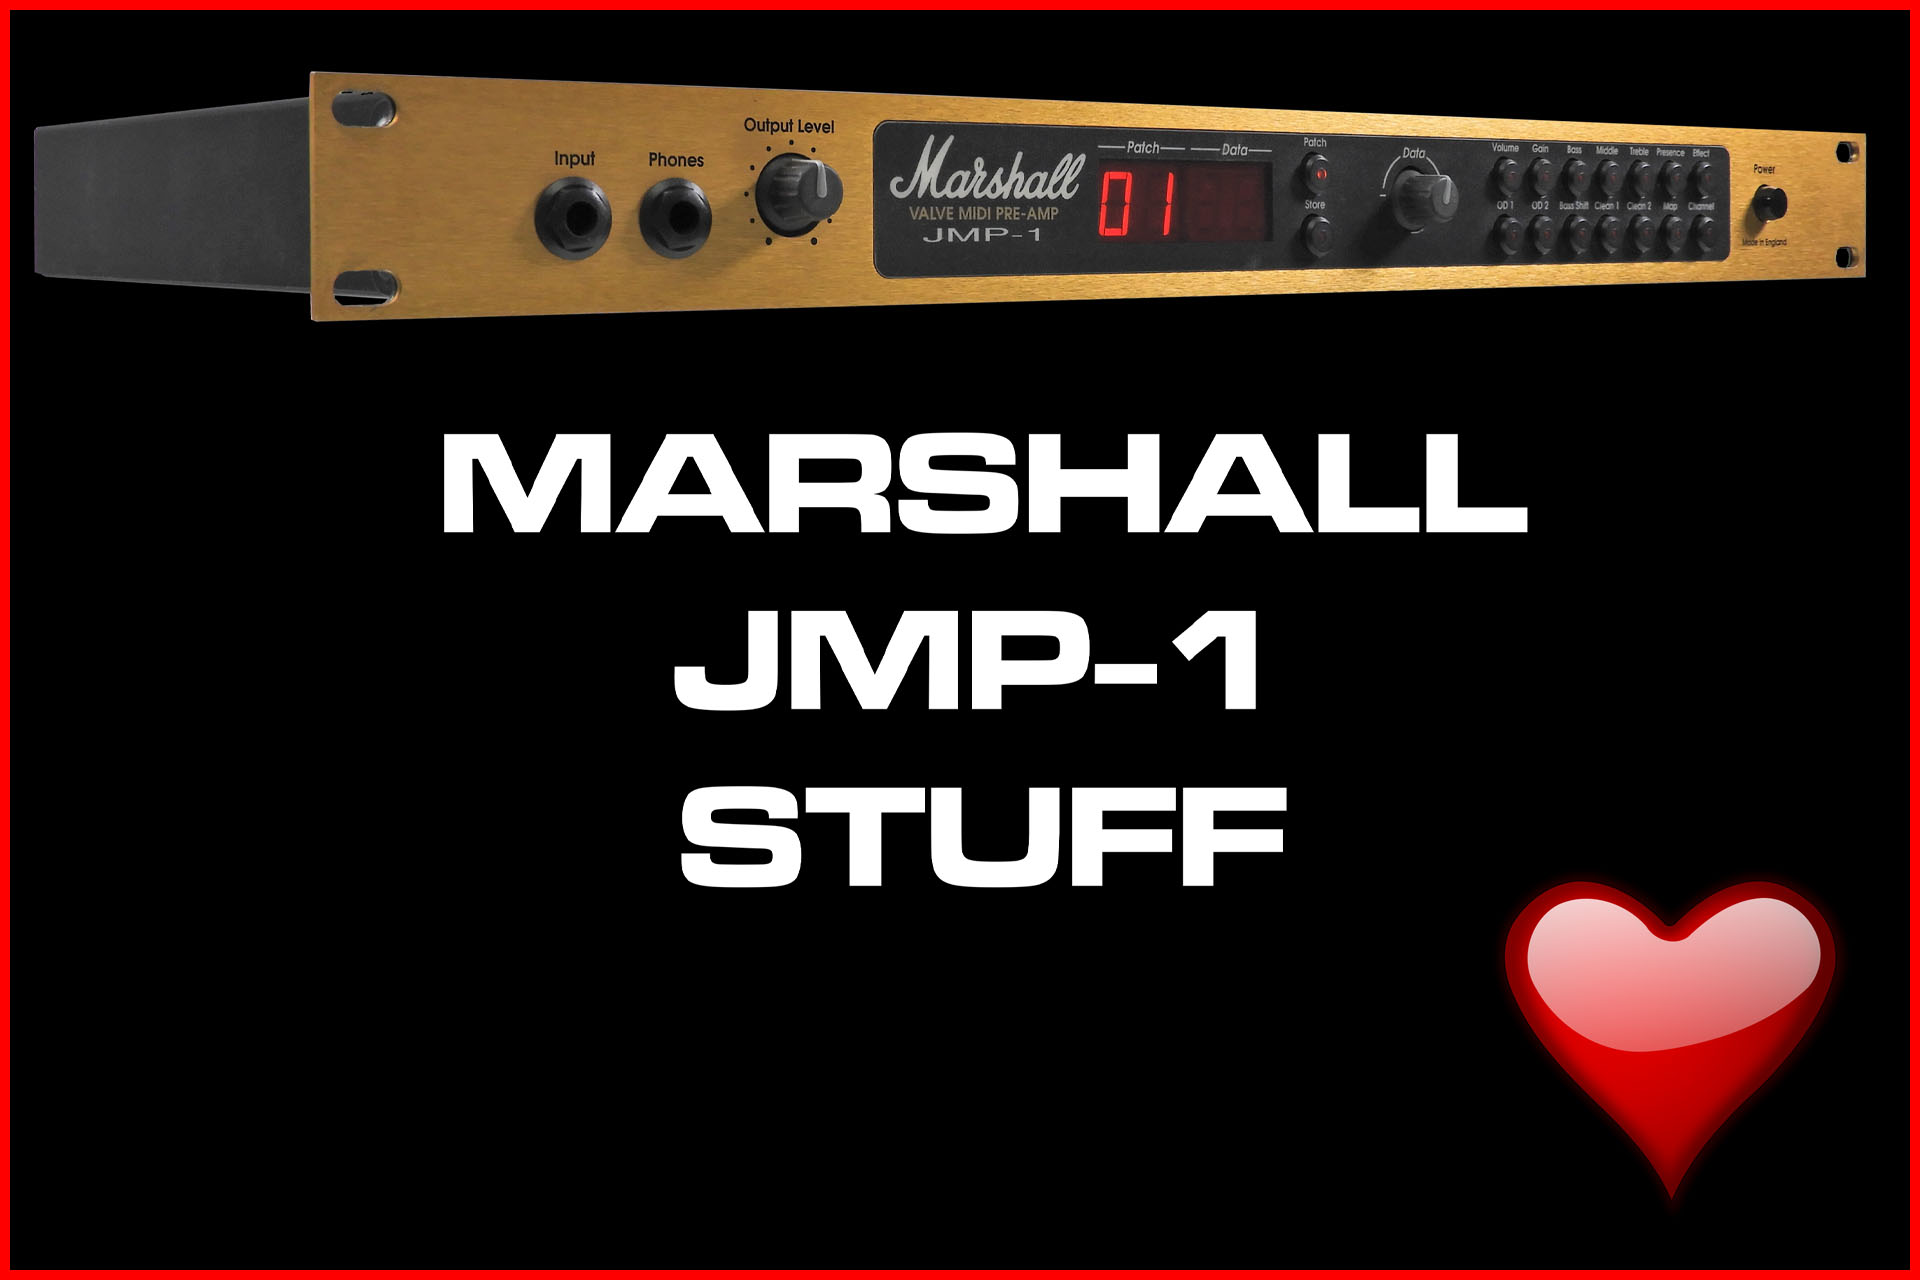 Marshall JMP-1 stuff at Plasma Music